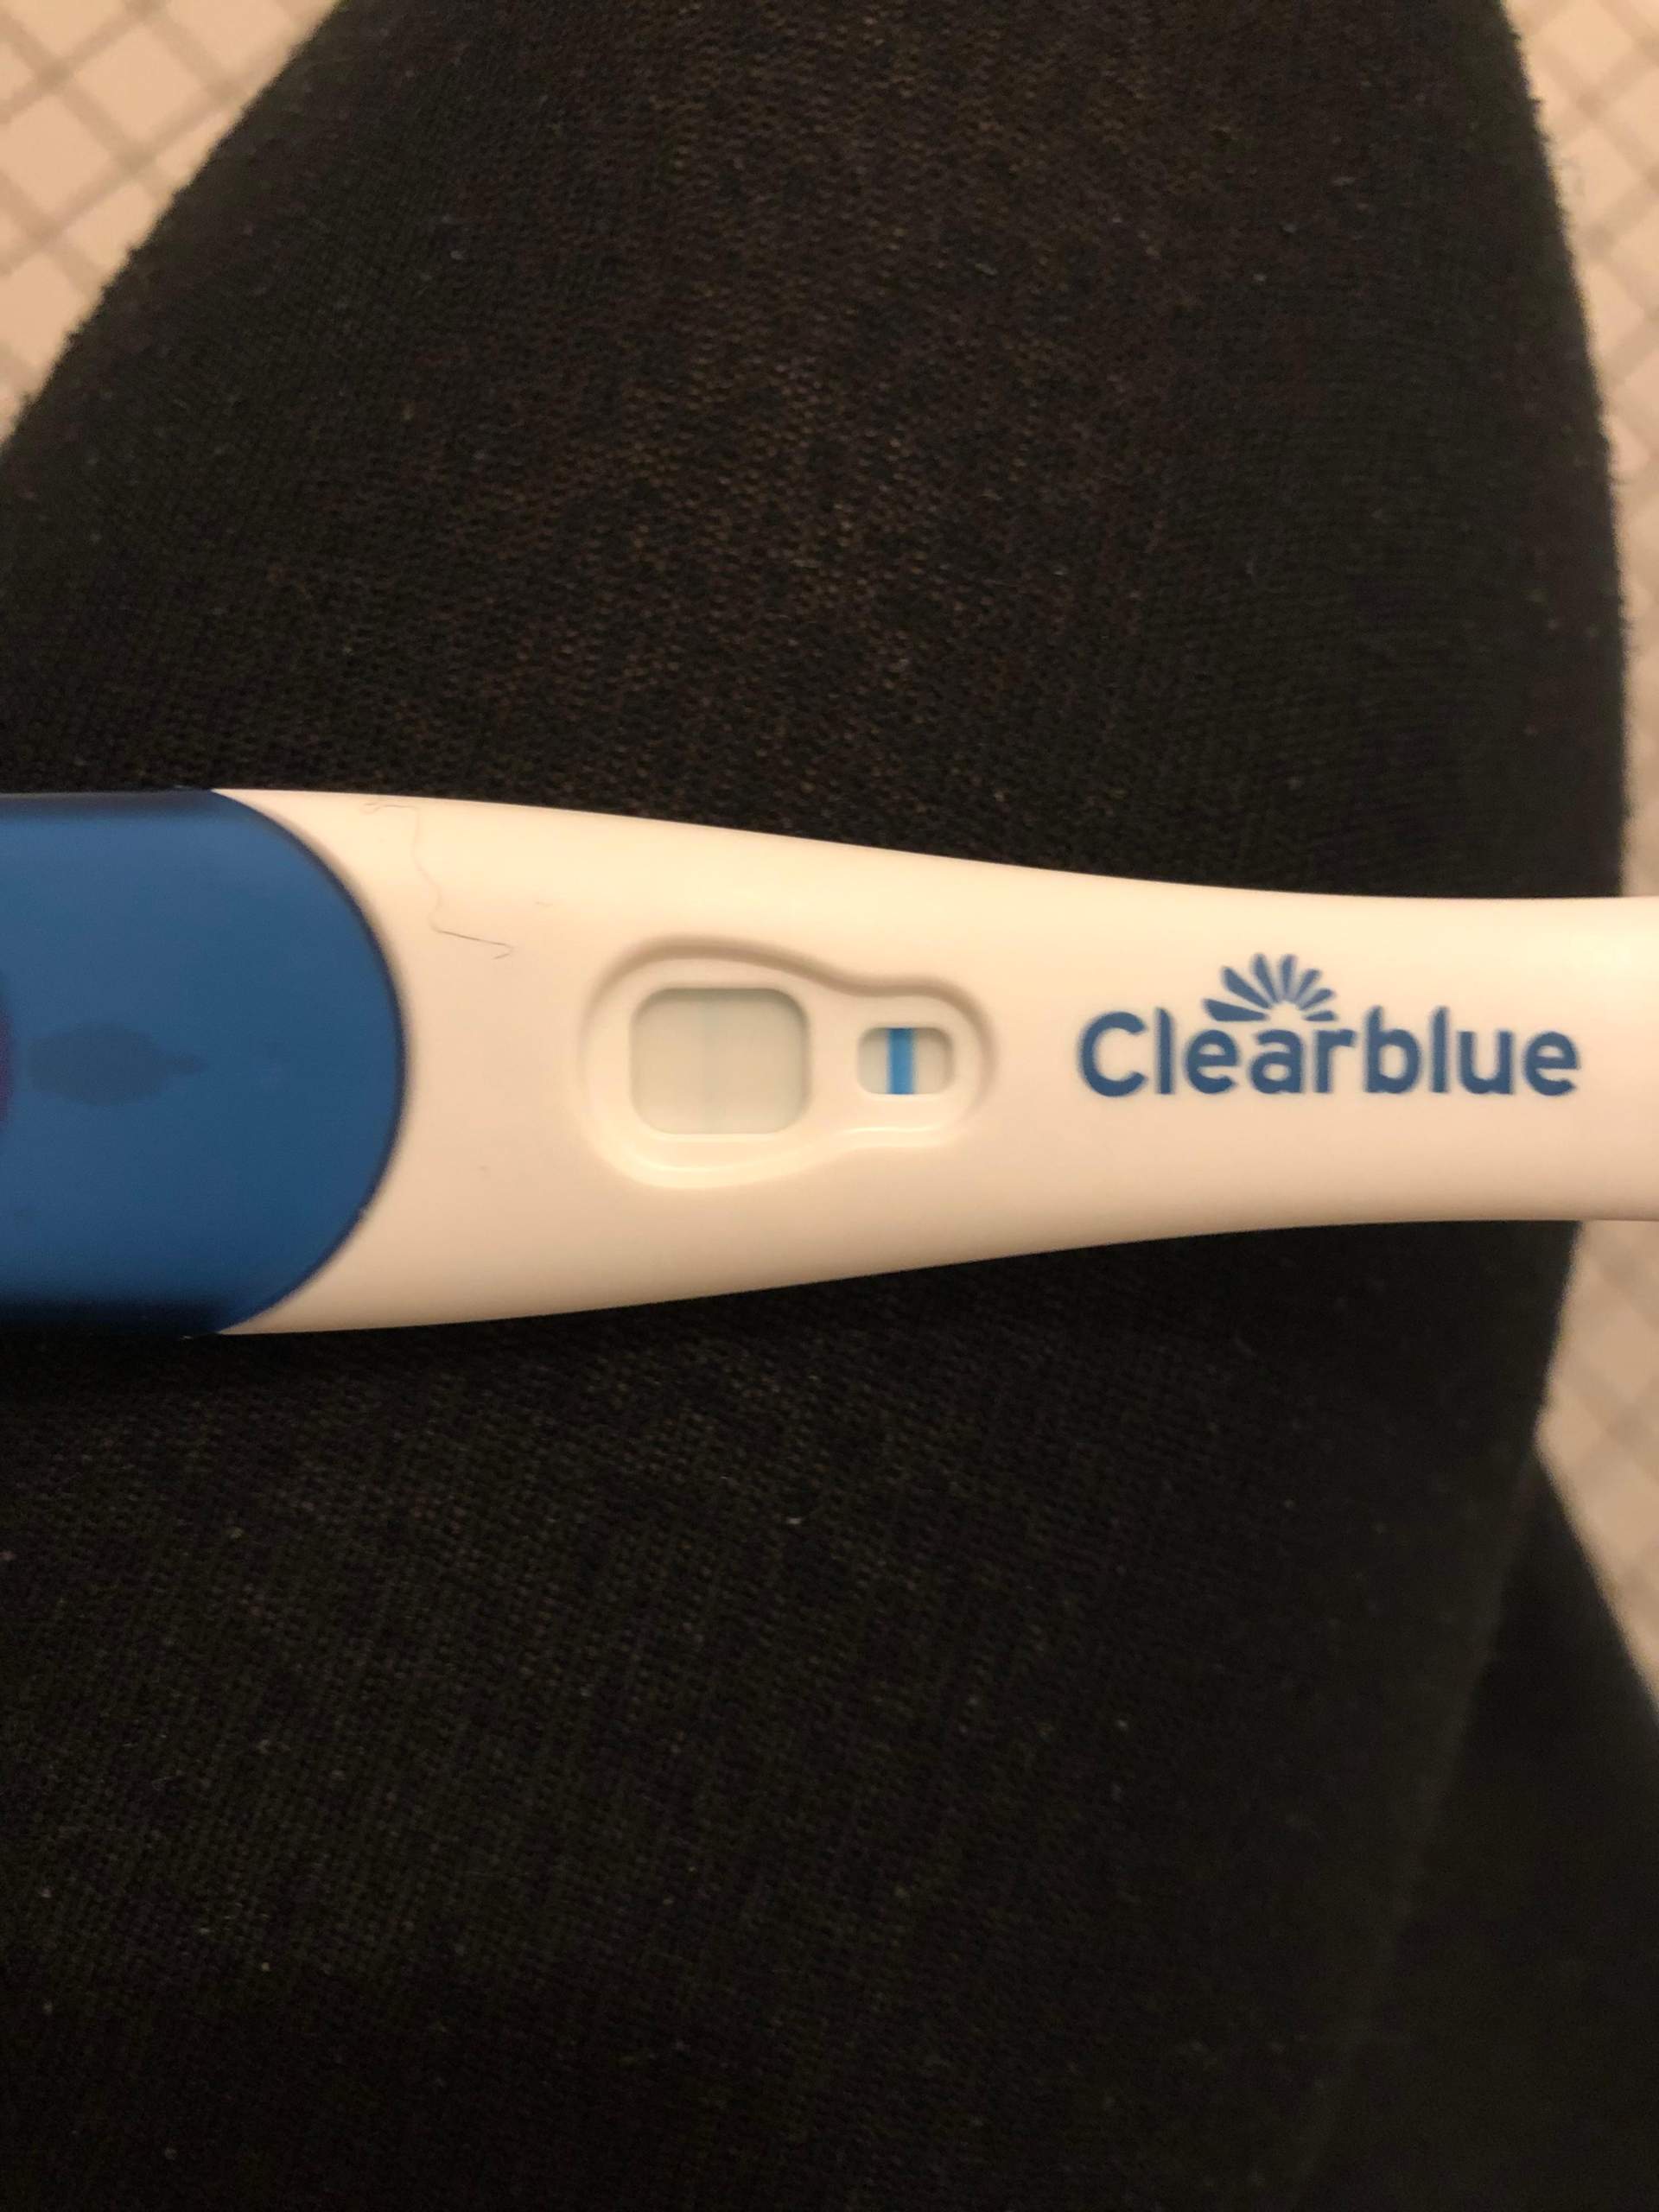 Test positiver schwangerschafts Schwangerschaftstest: Ab